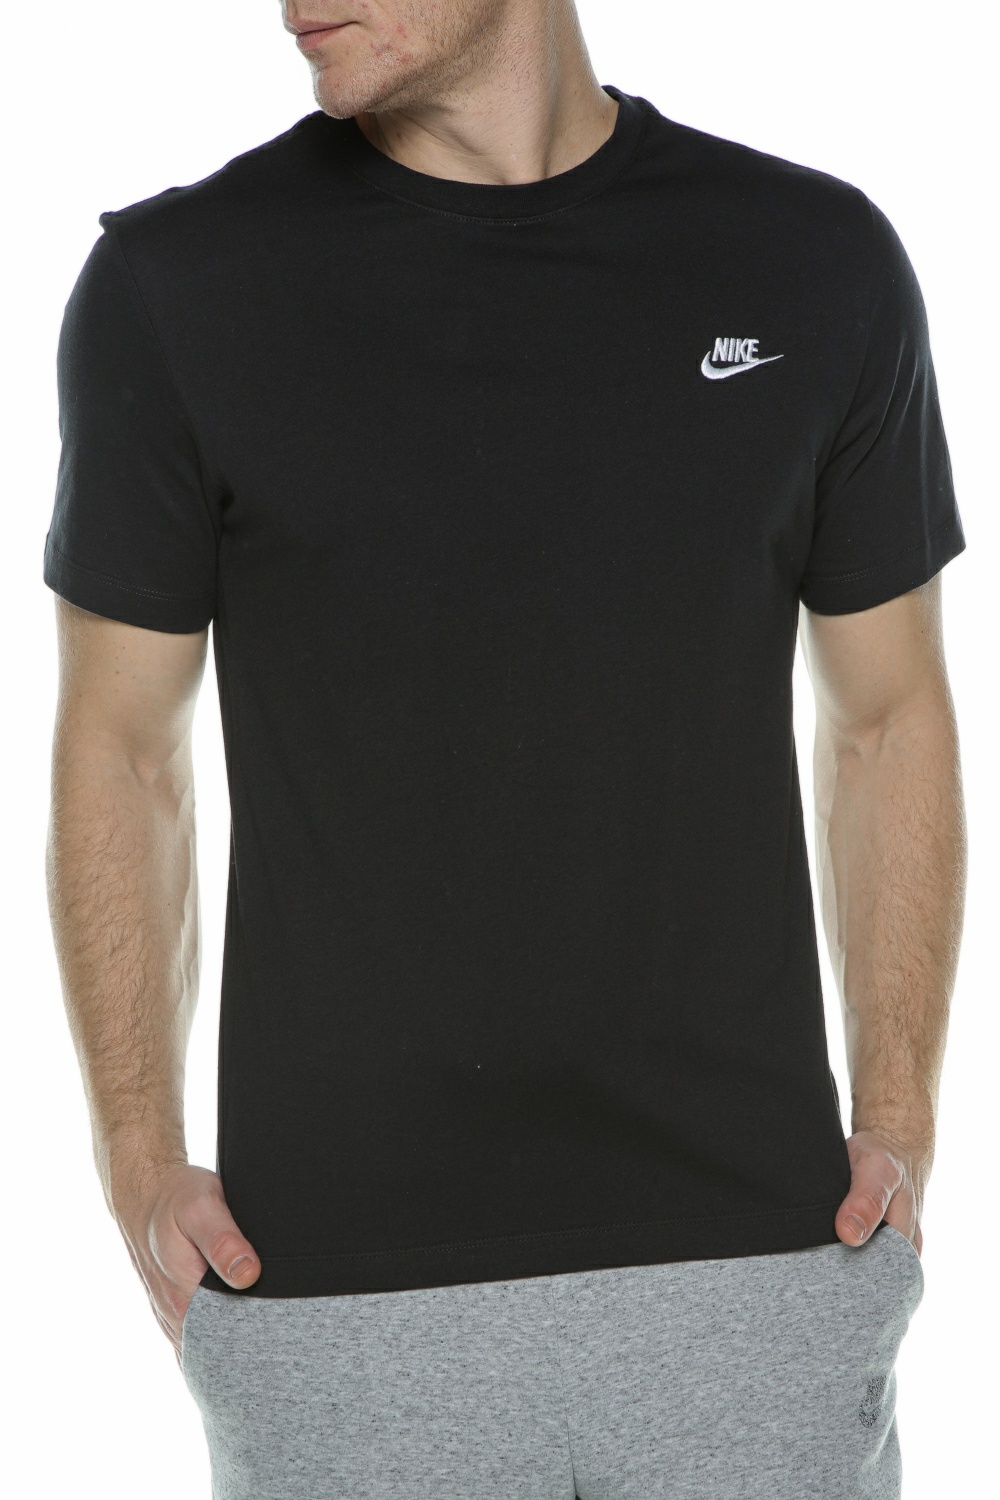 Ανδρικά/Ρούχα/Αθλητικά/T-shirt NIKE - Ανδρικό t-shirt NIKE NSW CLUB μαύρο